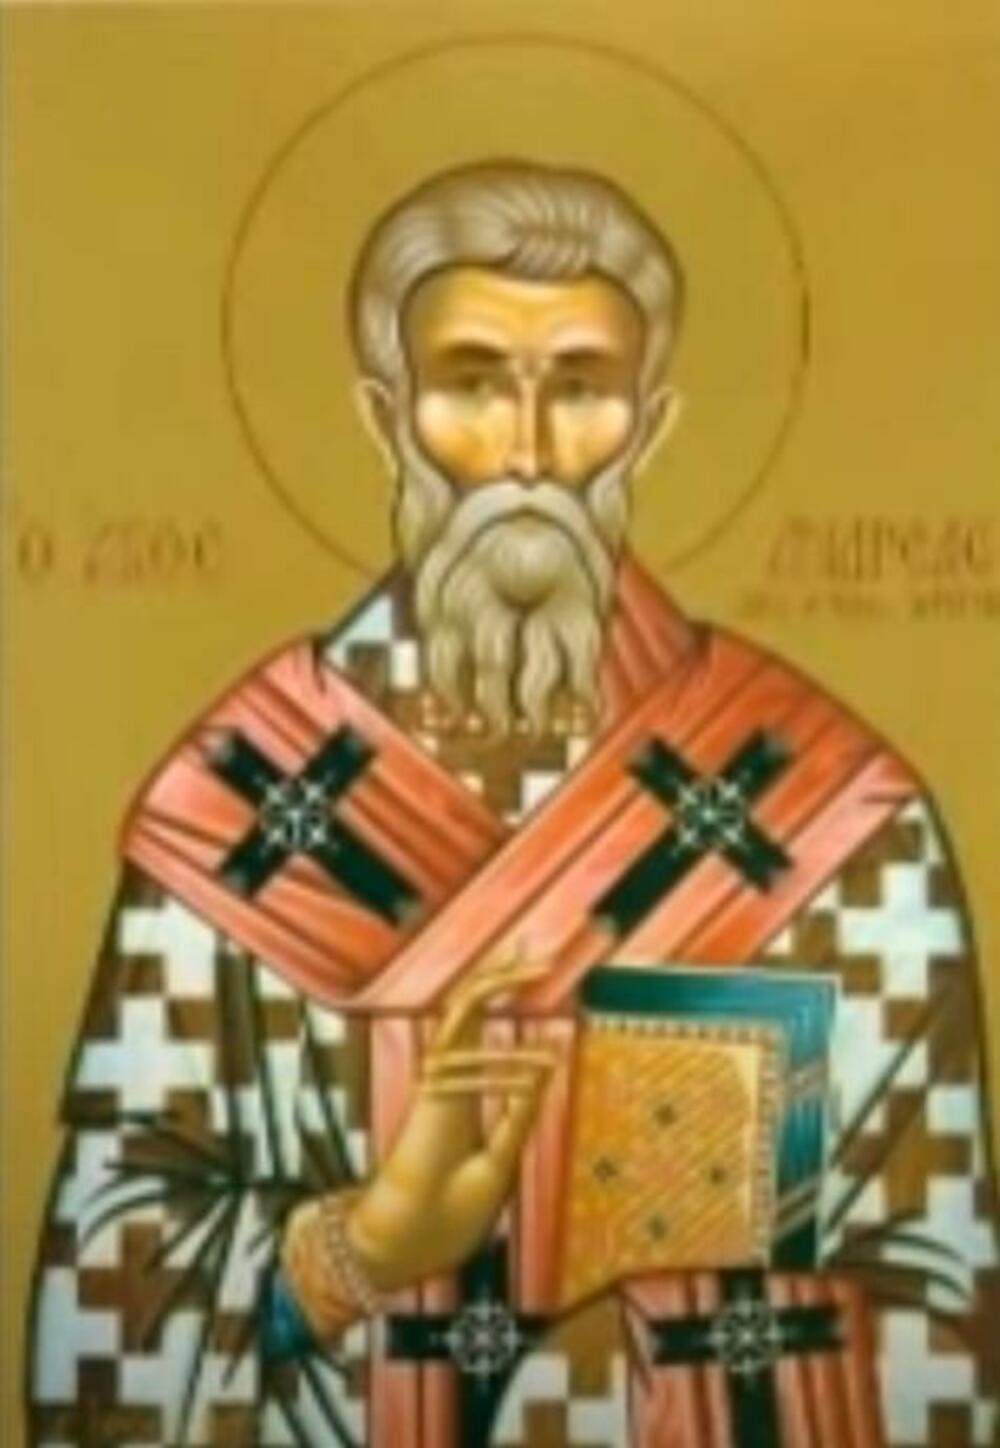 Sveti Andrej Kritski